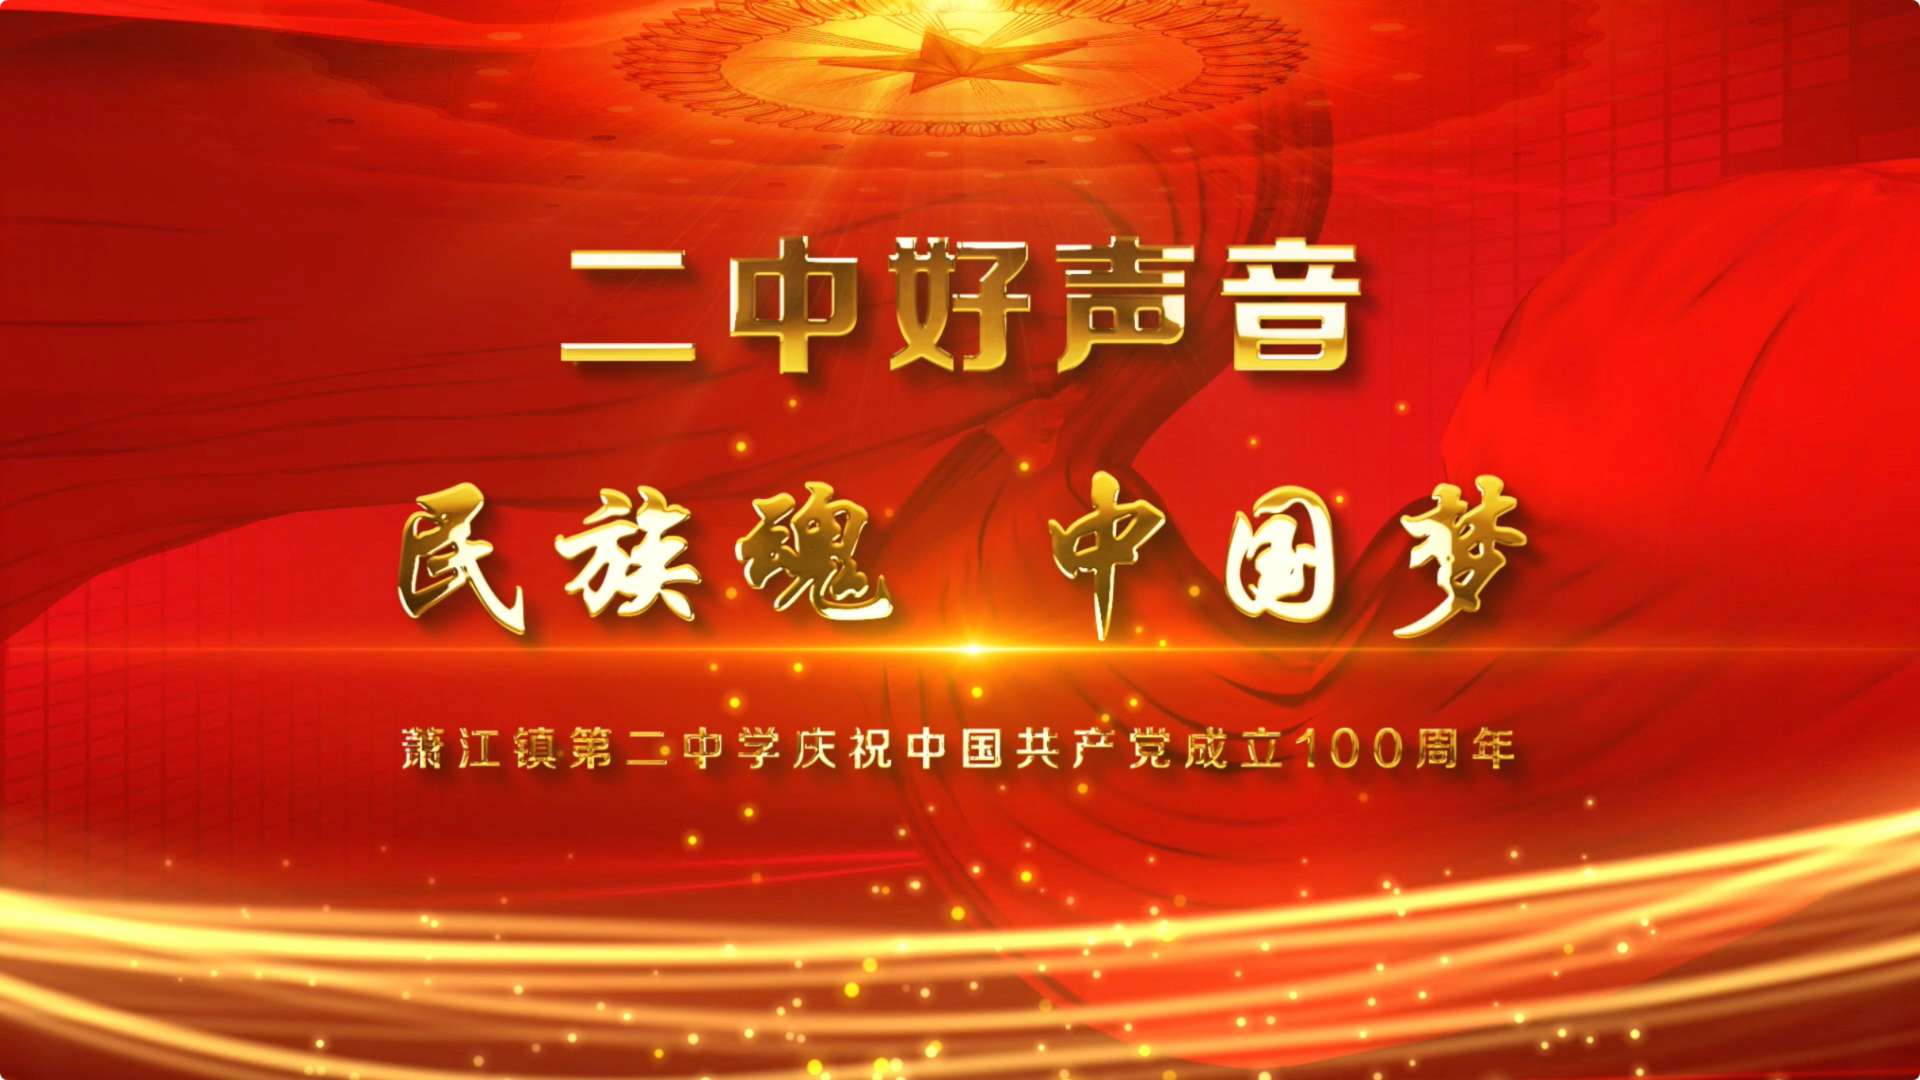 民族魂，中国梦－－二中好声音 萧江二中庆祝中国共产党成立100周年十佳歌手大奖赛